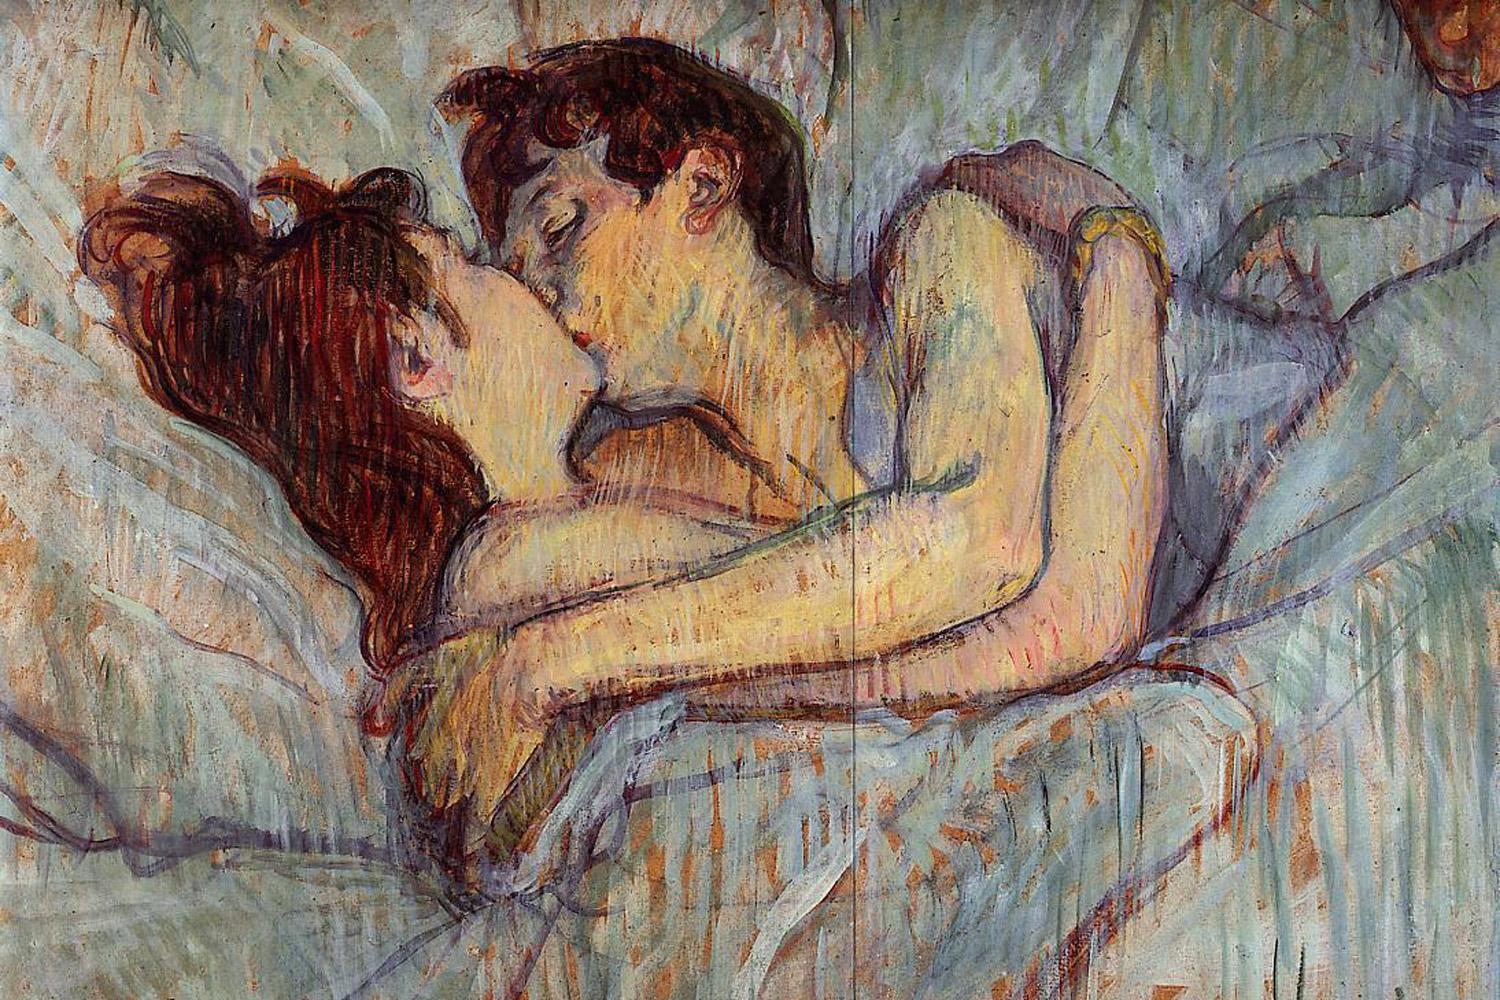 هفت یافته درباره رابطه جنسی و عشق که زیگموند فروید کشف کرد.